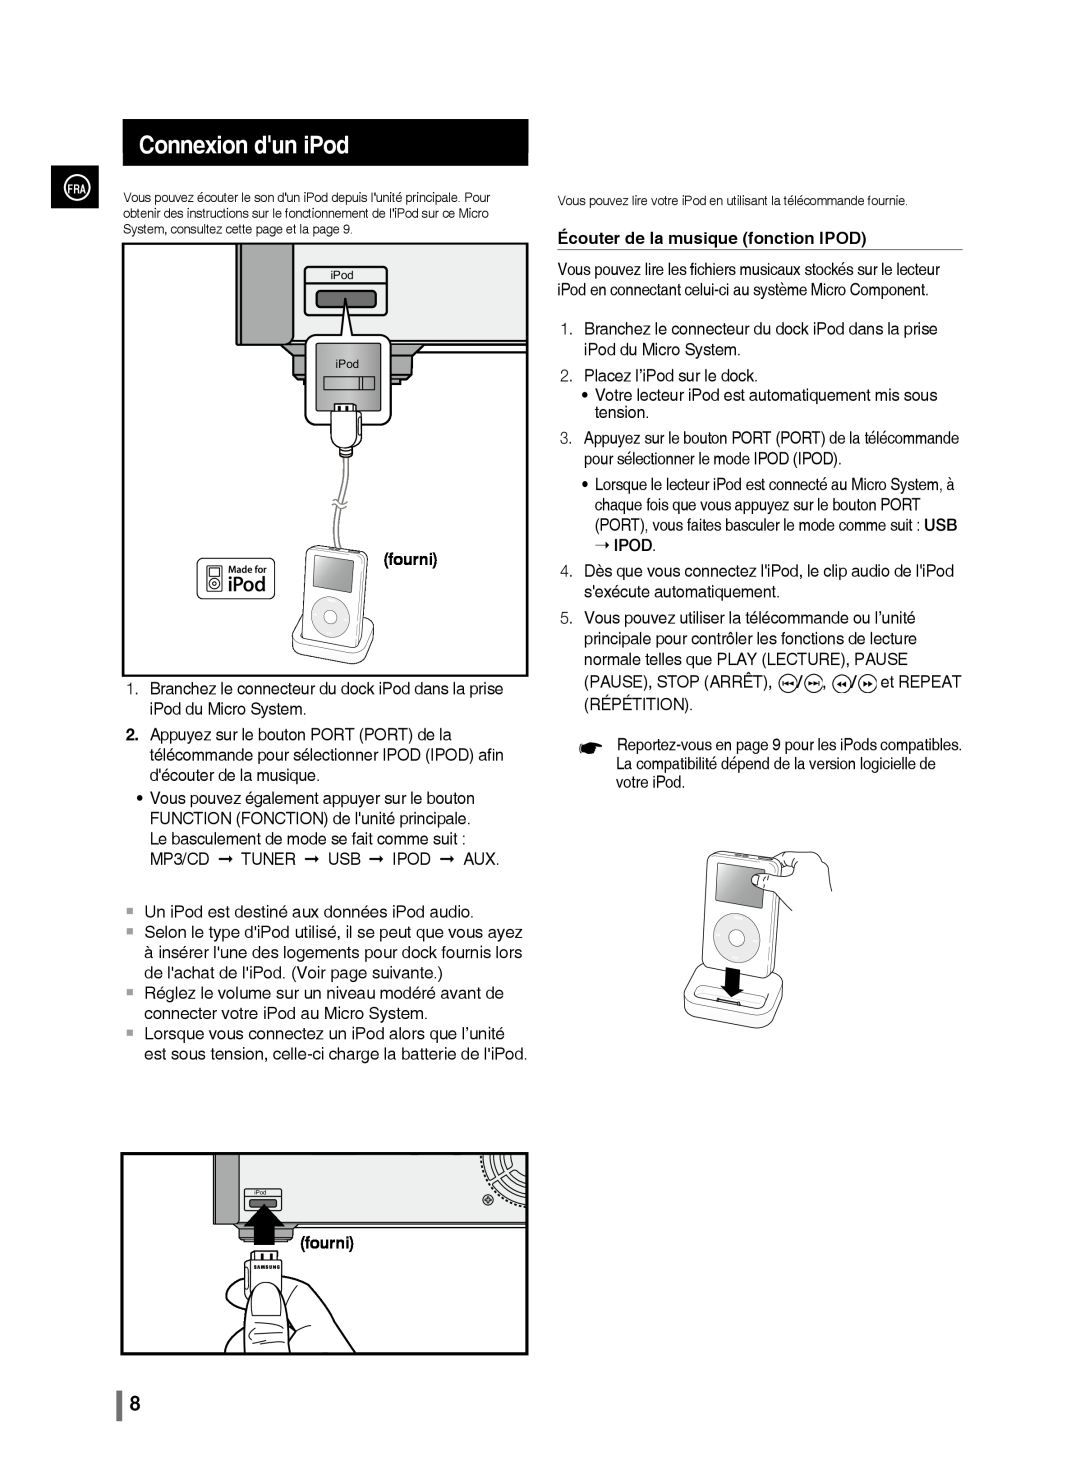 Samsung MM-C430/XEF manual Connexion dun iPod, fourni, Écouter de la musique fonction IPOD,  Ipod 